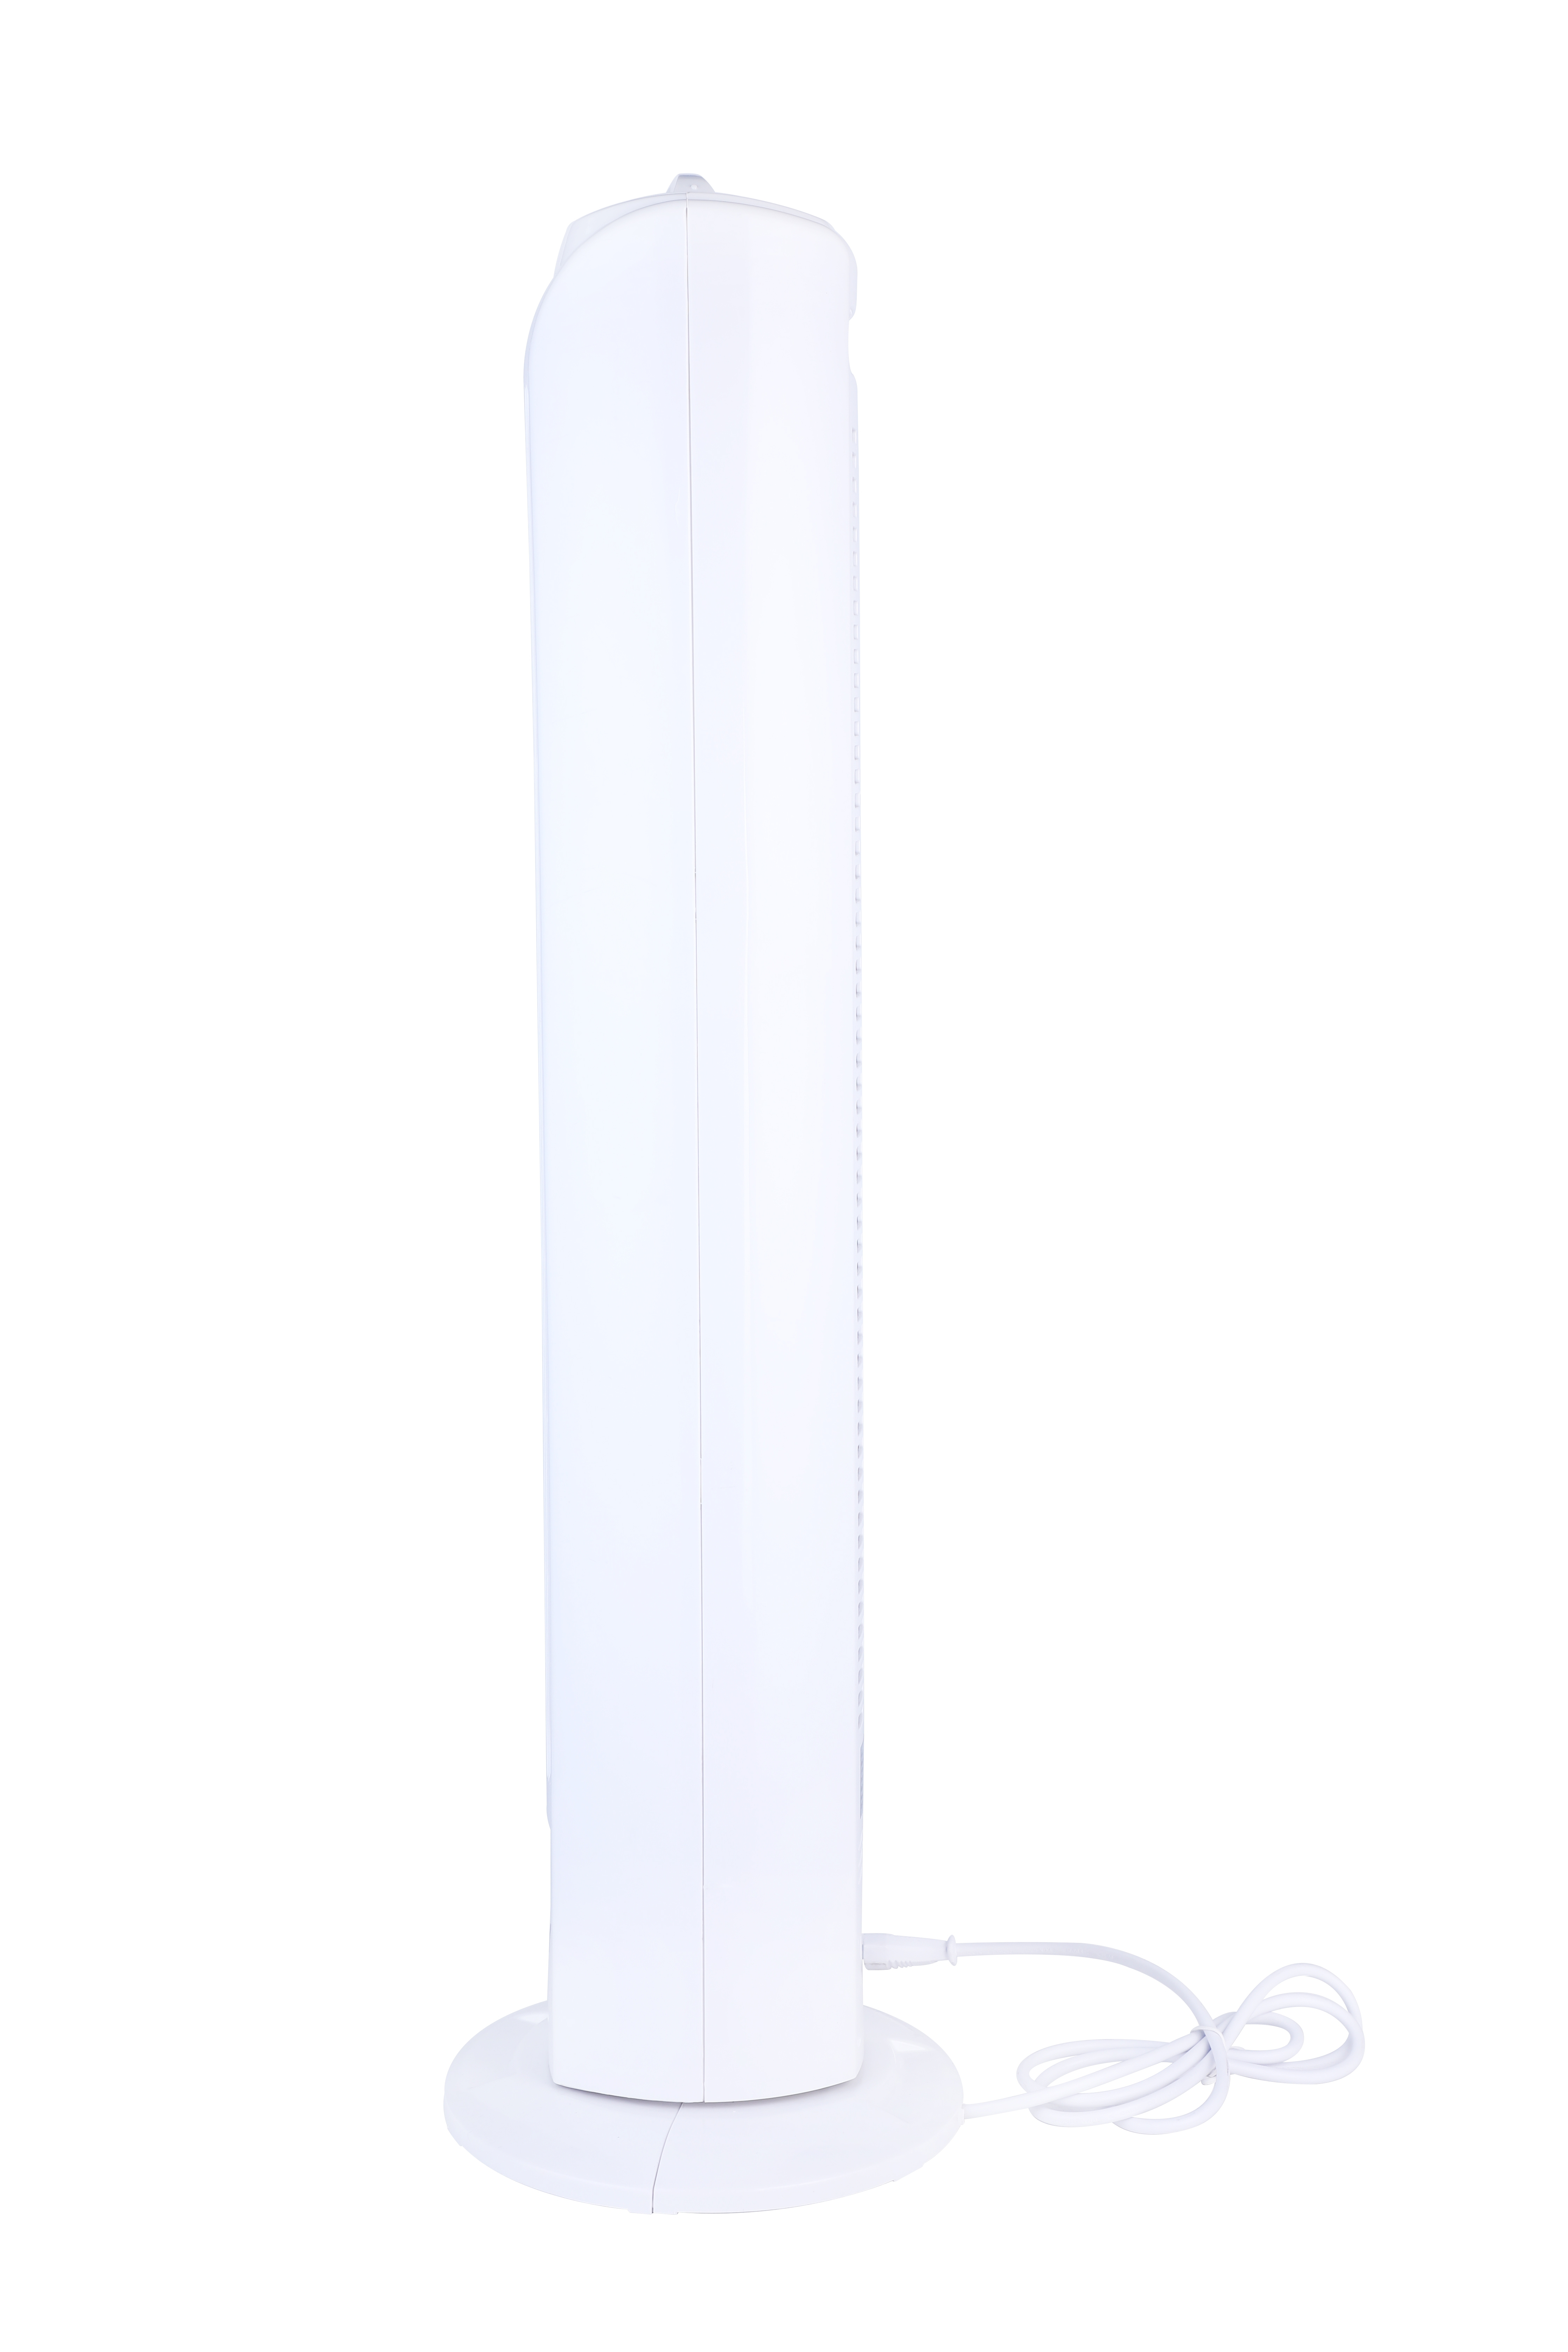 NJOY Ventilator - Turm Sicher Turmventilator - Weiß - - Geschwindigkeiten - Weiss Turm - 3 Superkuehlung 50W 